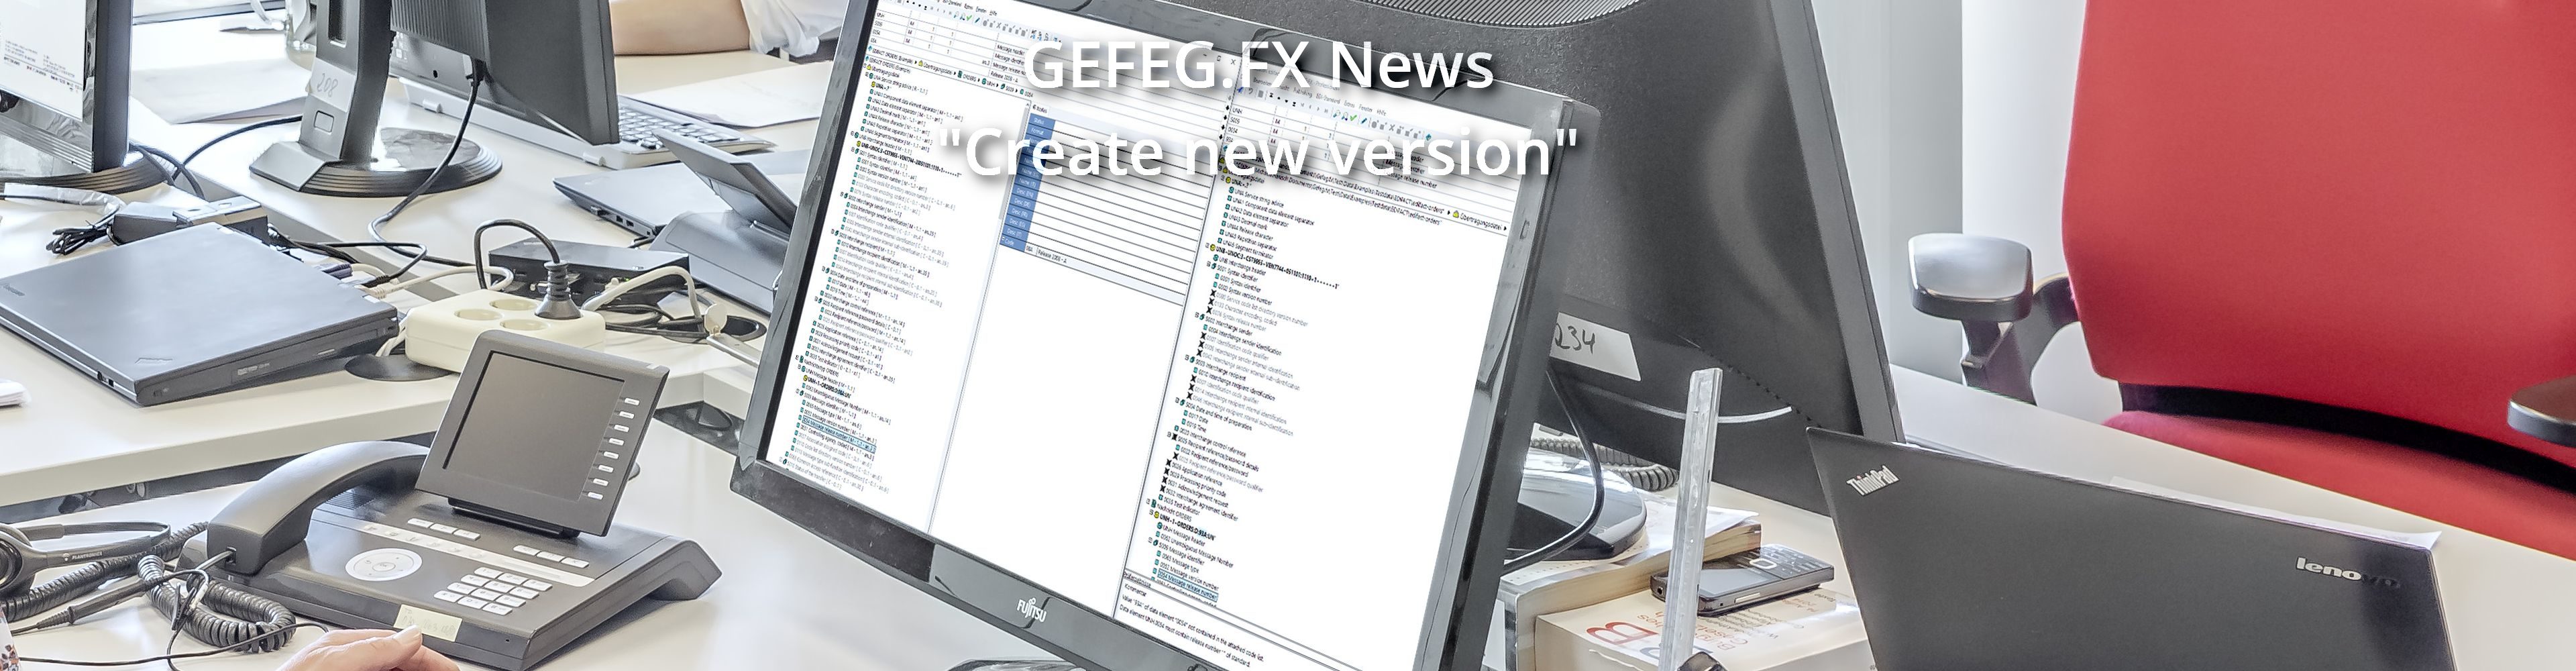 GEFEG.FX News - Create New Version